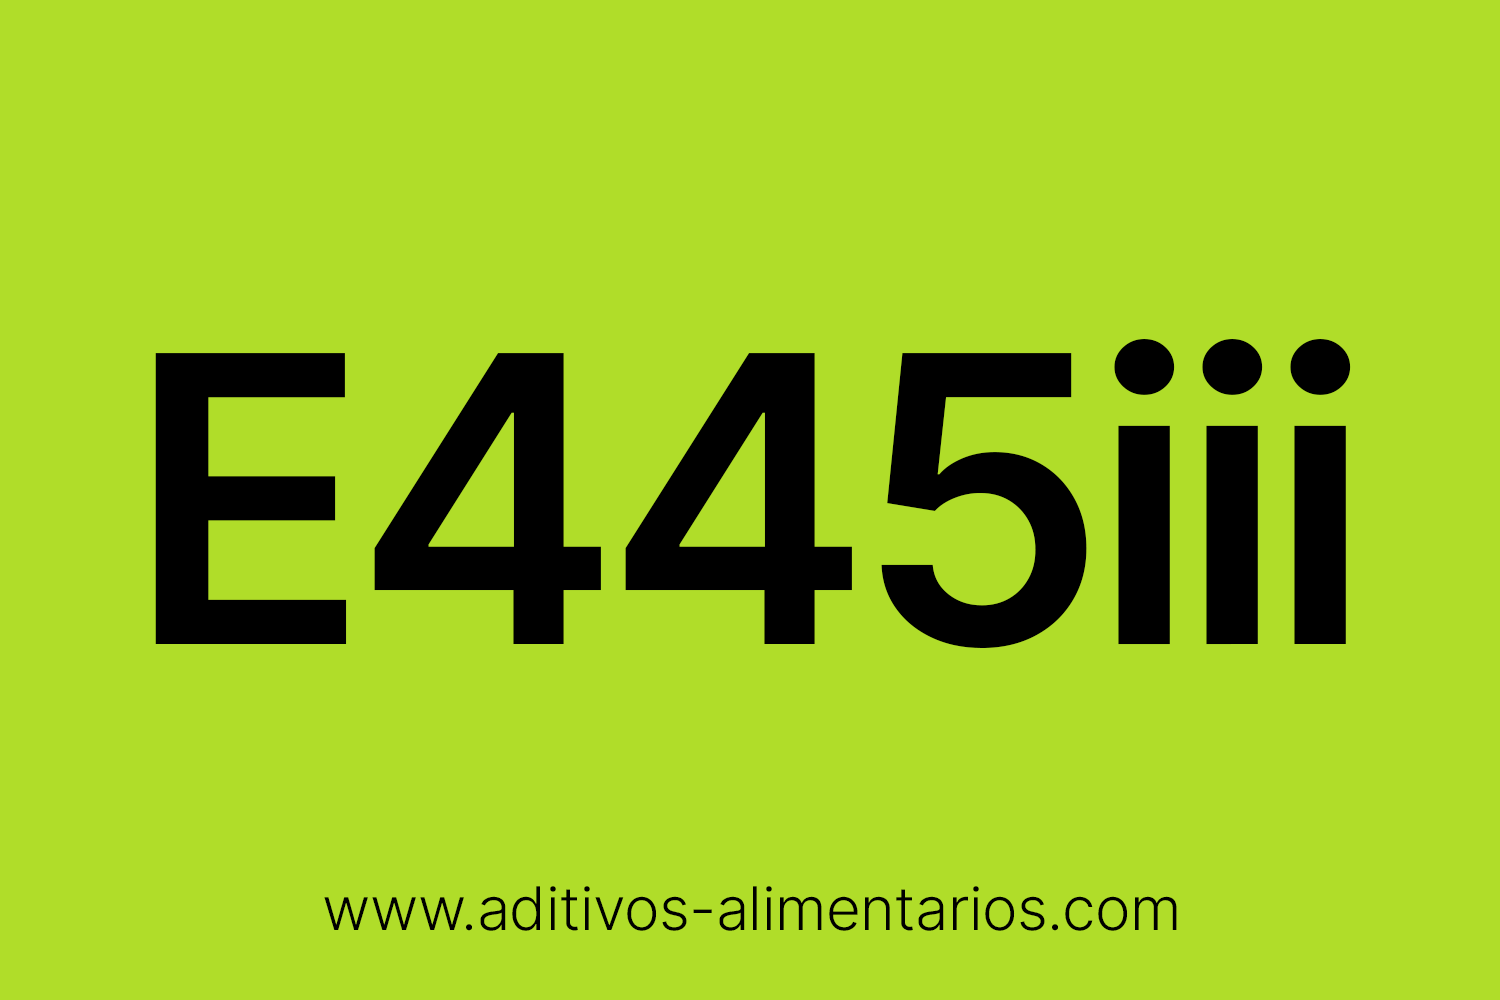 Aditivo Alimentario - E445iii - Ésteres Glicéridos de Colofonia de Madera